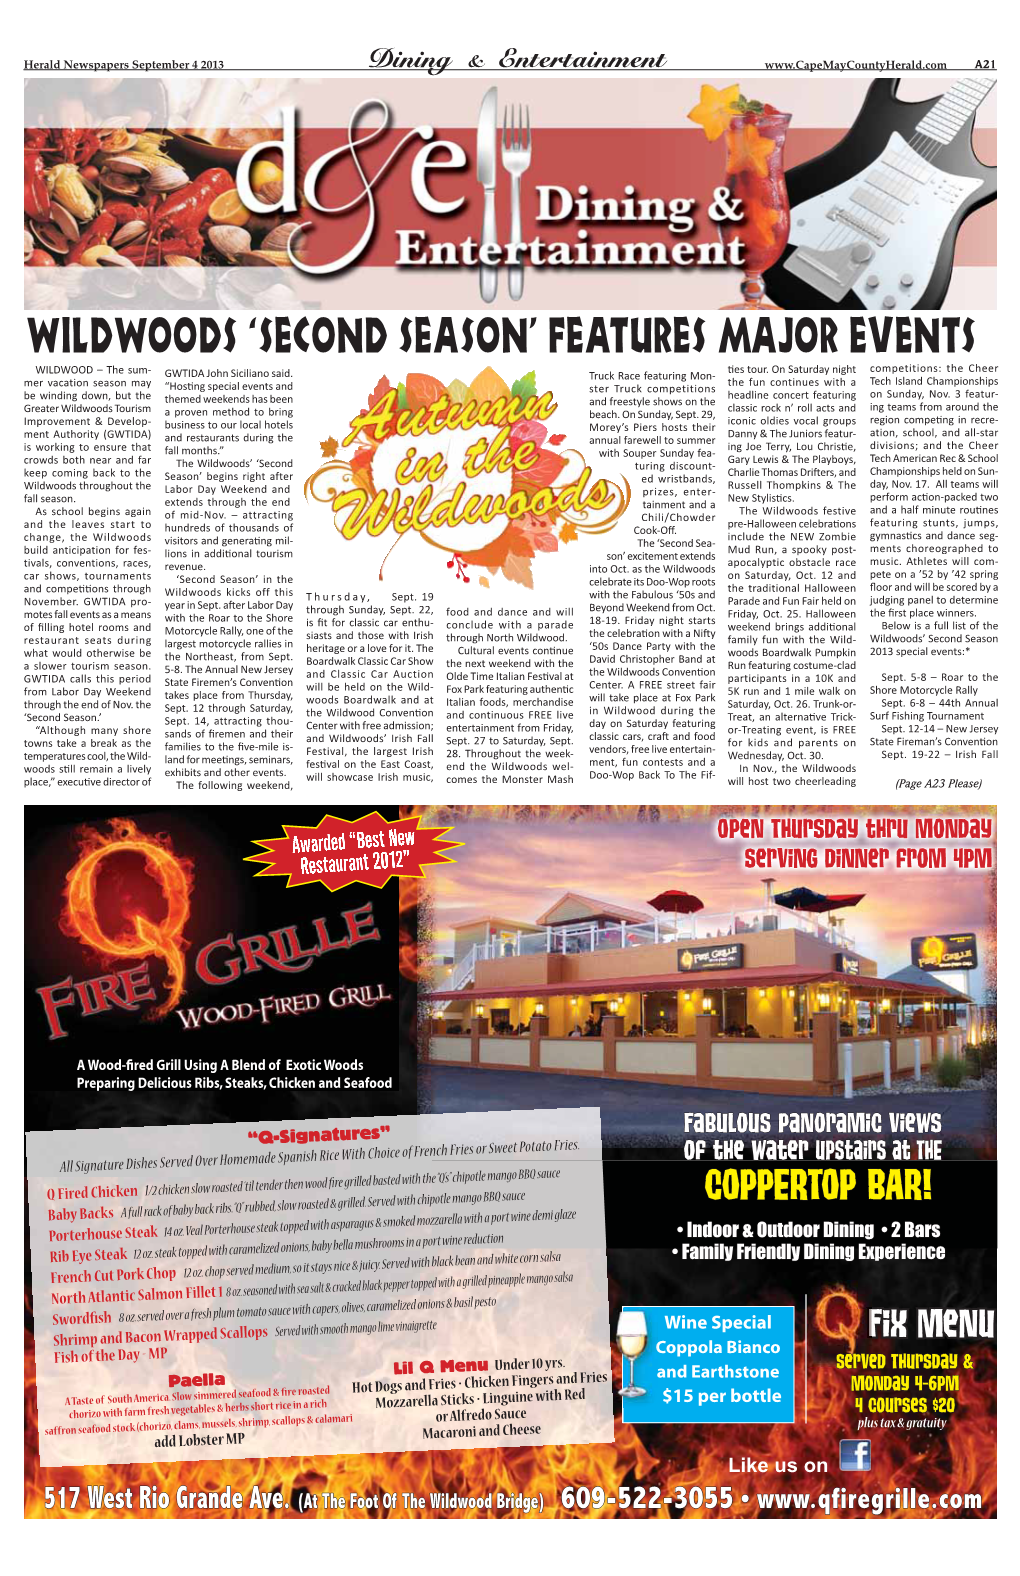 Wildwoods ‘Second Season’ Features Major Events